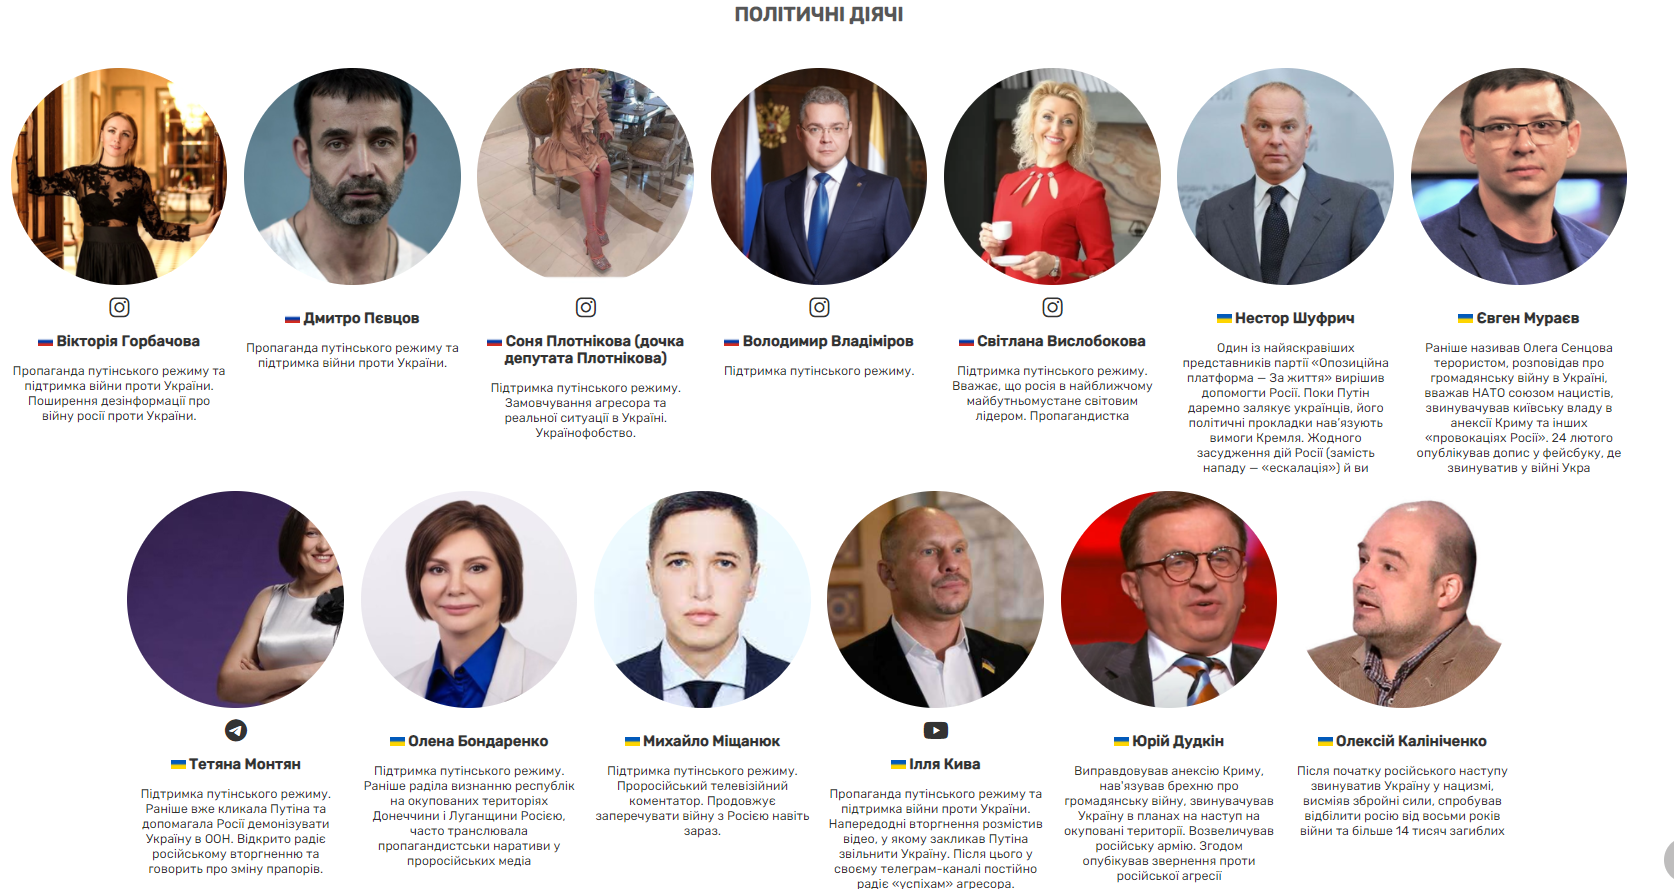 theylovewar: в Україні створили сайт з переліком артистів, інфлюенсерів, політиків, які підтримують путіна